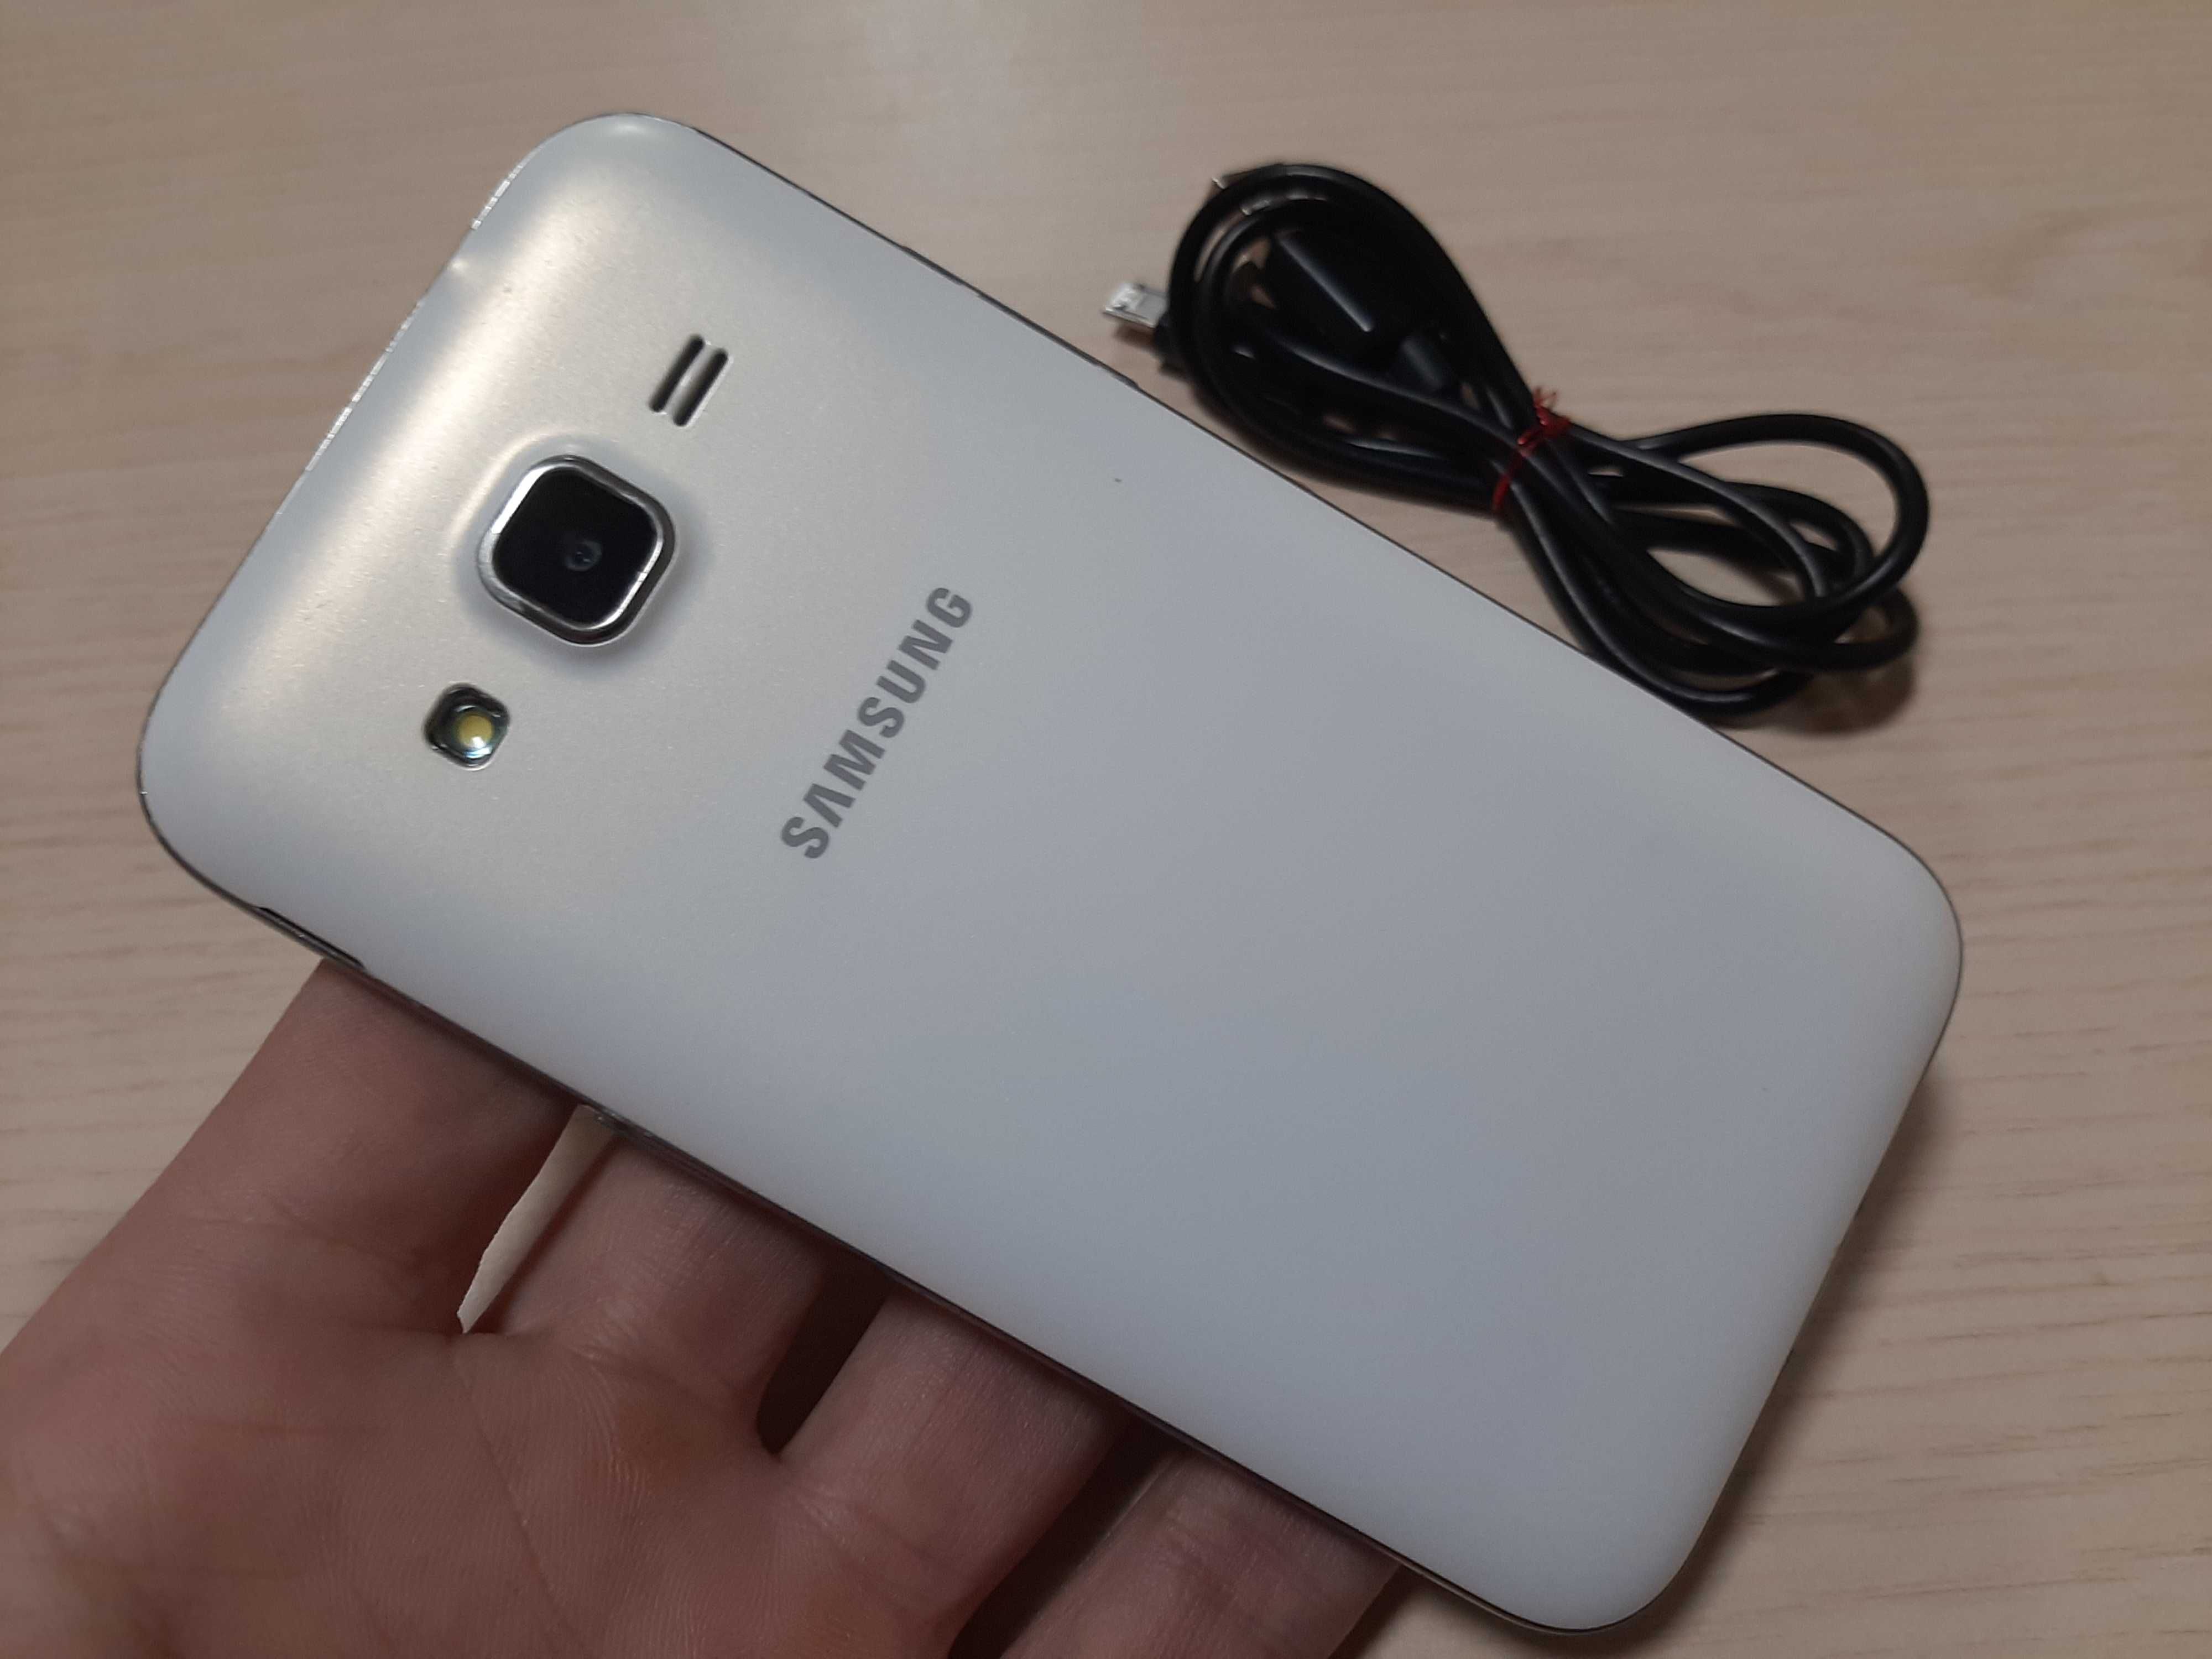 Смартфон Samsung Galaxy G360(хорошее состояние)